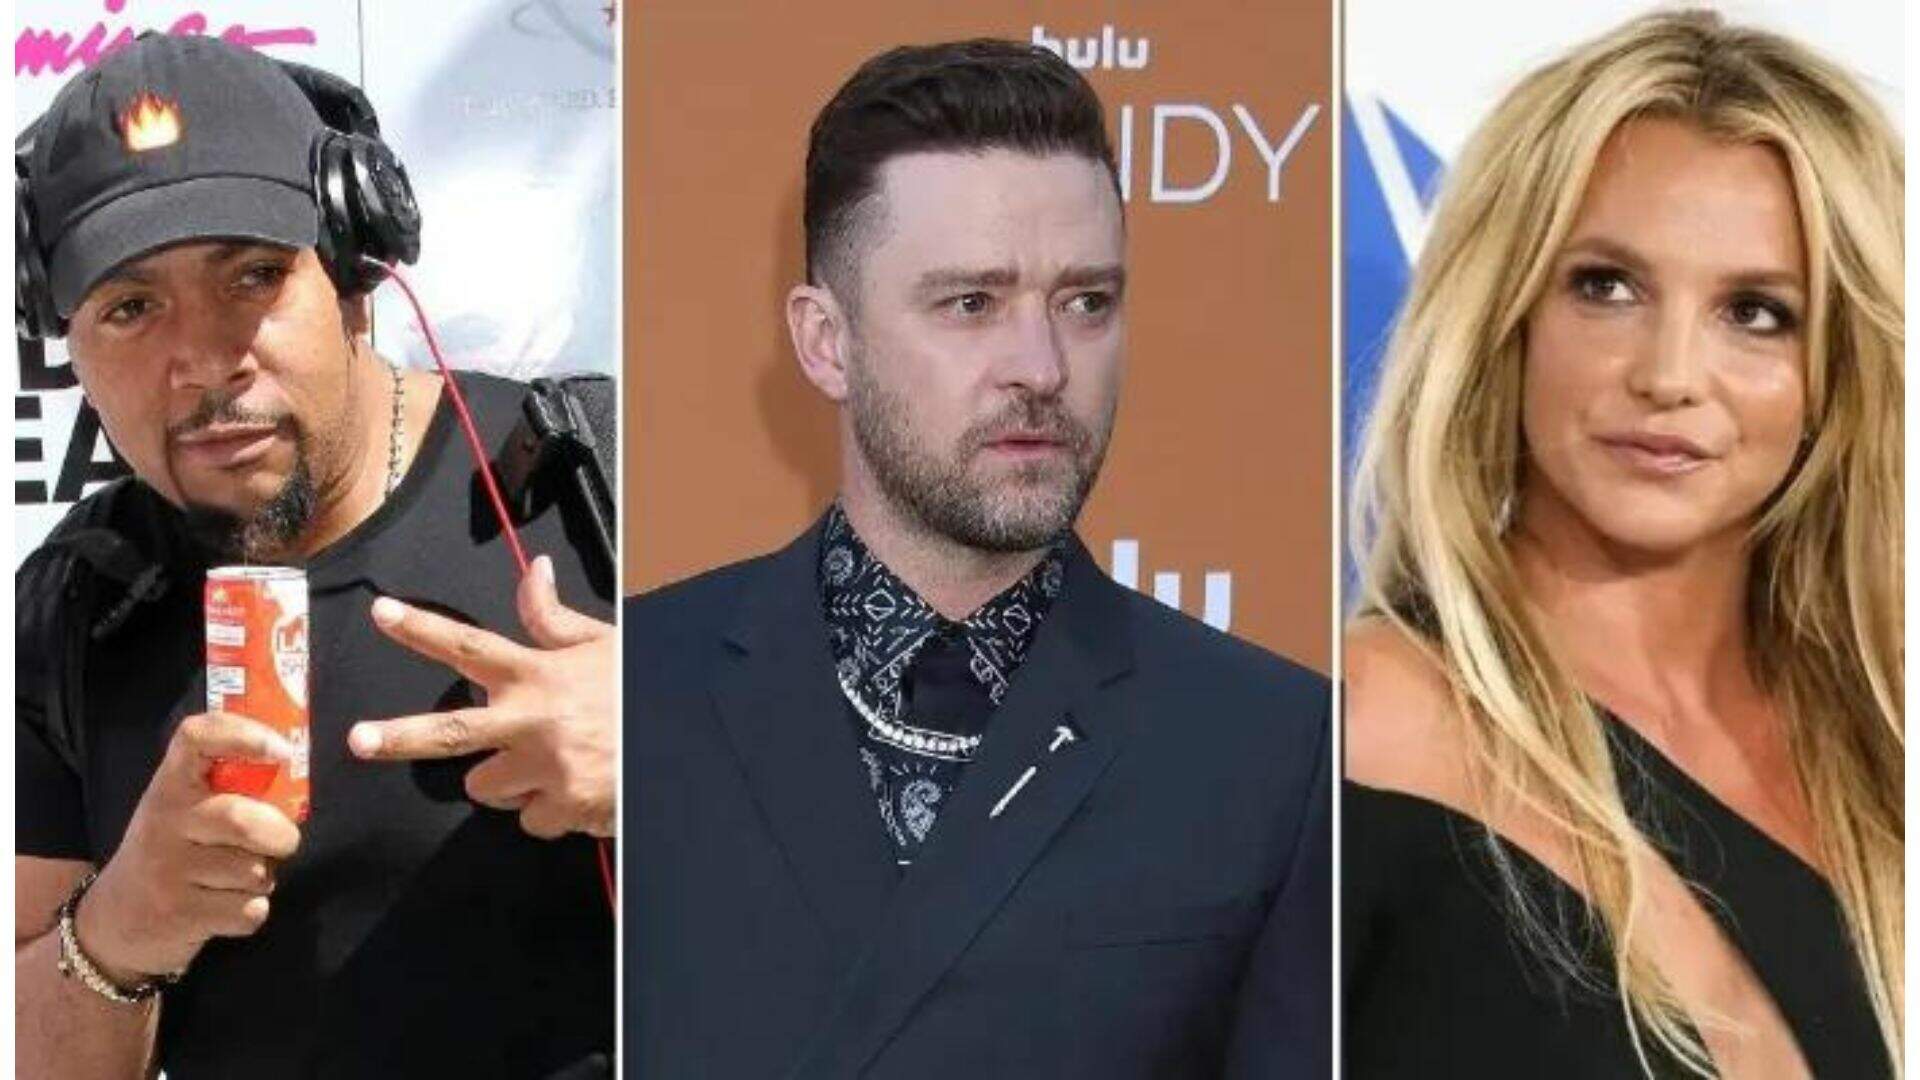 Amigo de Justin Timberlake, Timbaland é “cancelado” após fazer comentário polêmico sobre Britney Spears - Metropolitana FM